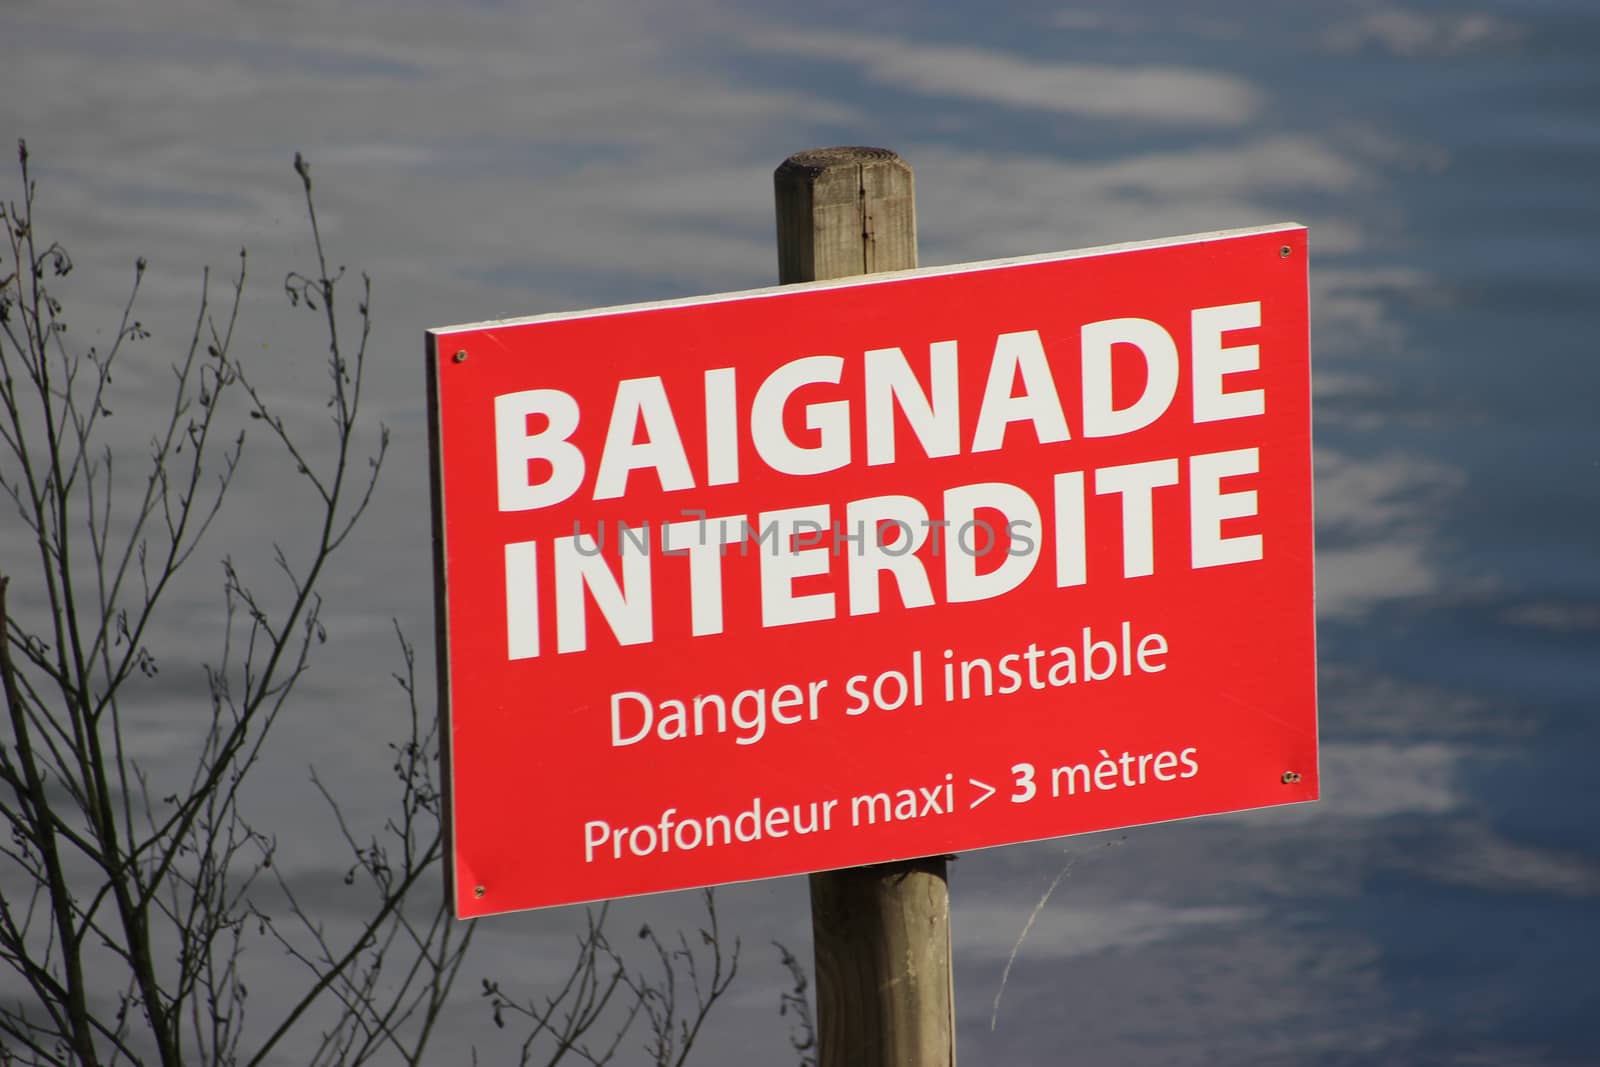 Panneau Baignade Interdite by bensib